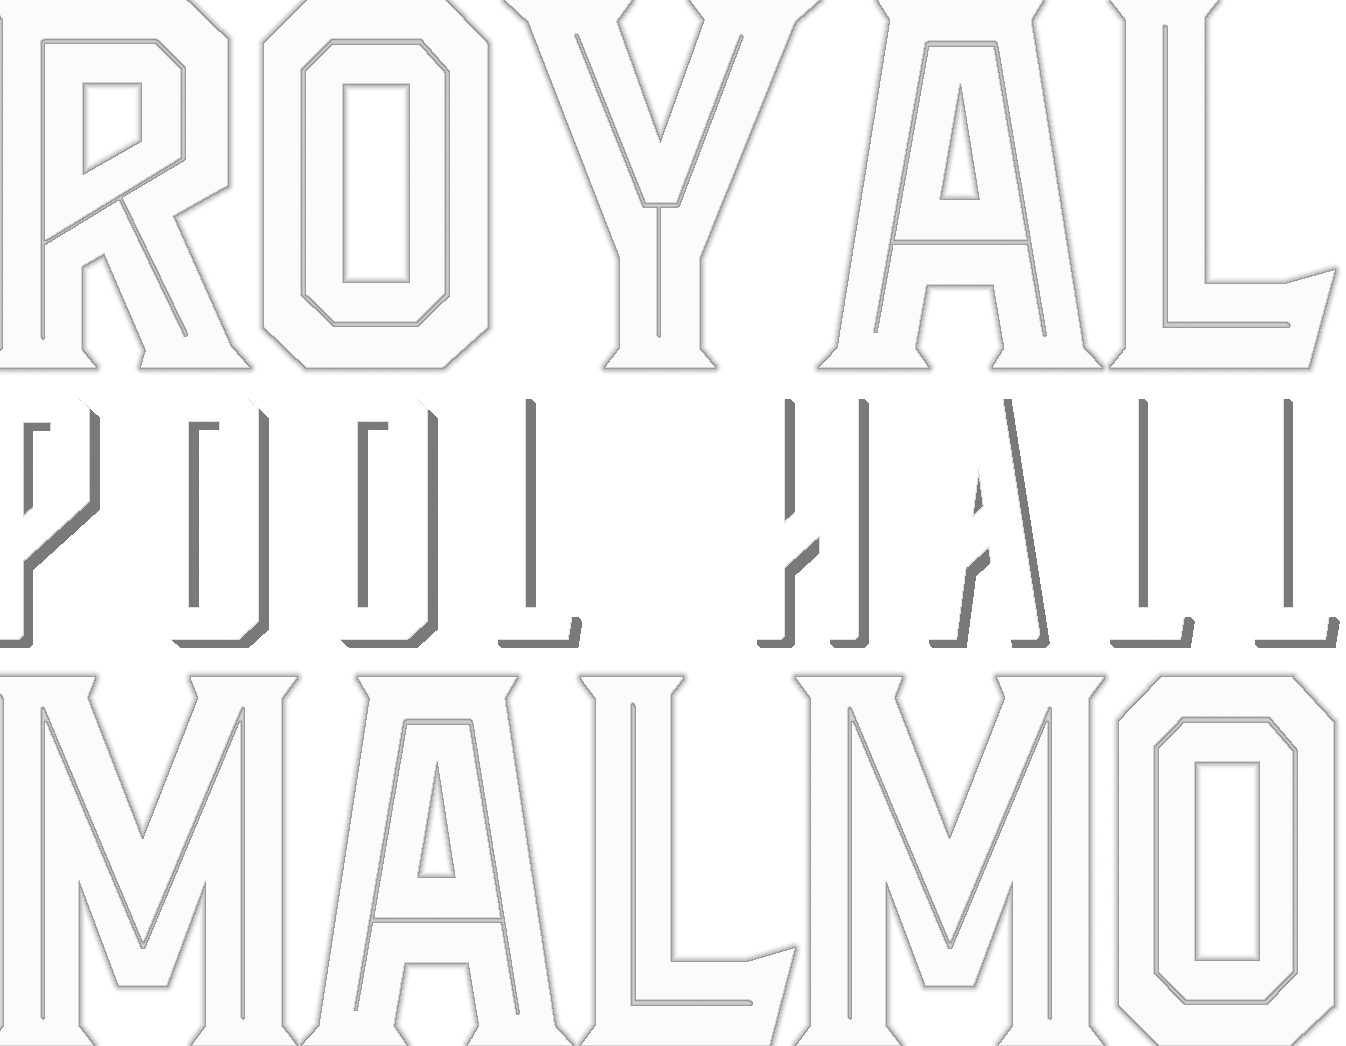 Royal Pool Hall